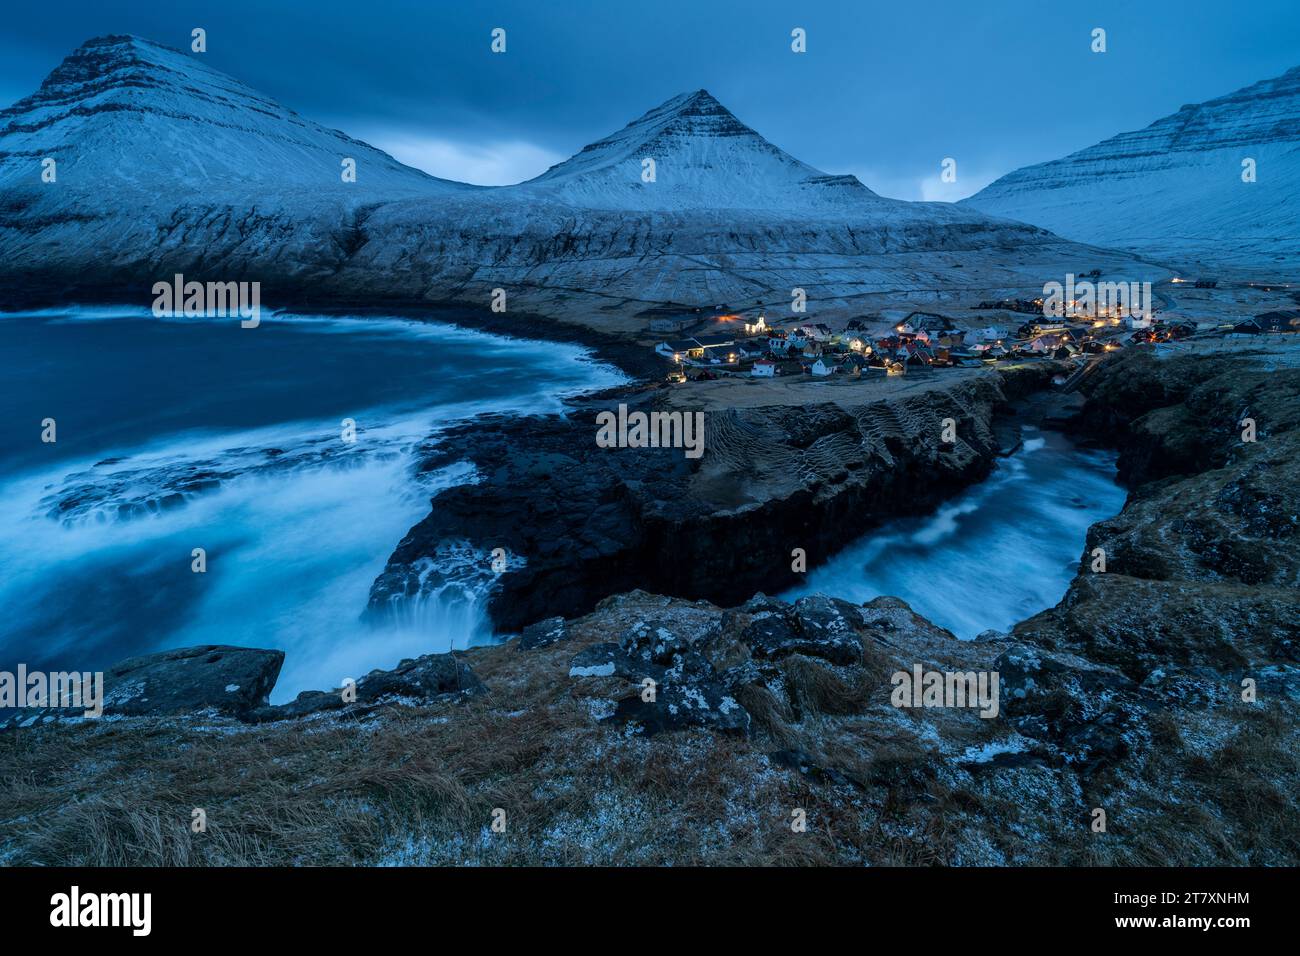 Dorf Gjogv und schneebedeckte Berge in der Abenddämmerung, Gjogv, Eysturoy, Färöer, Dänemark, Europa Stockfoto